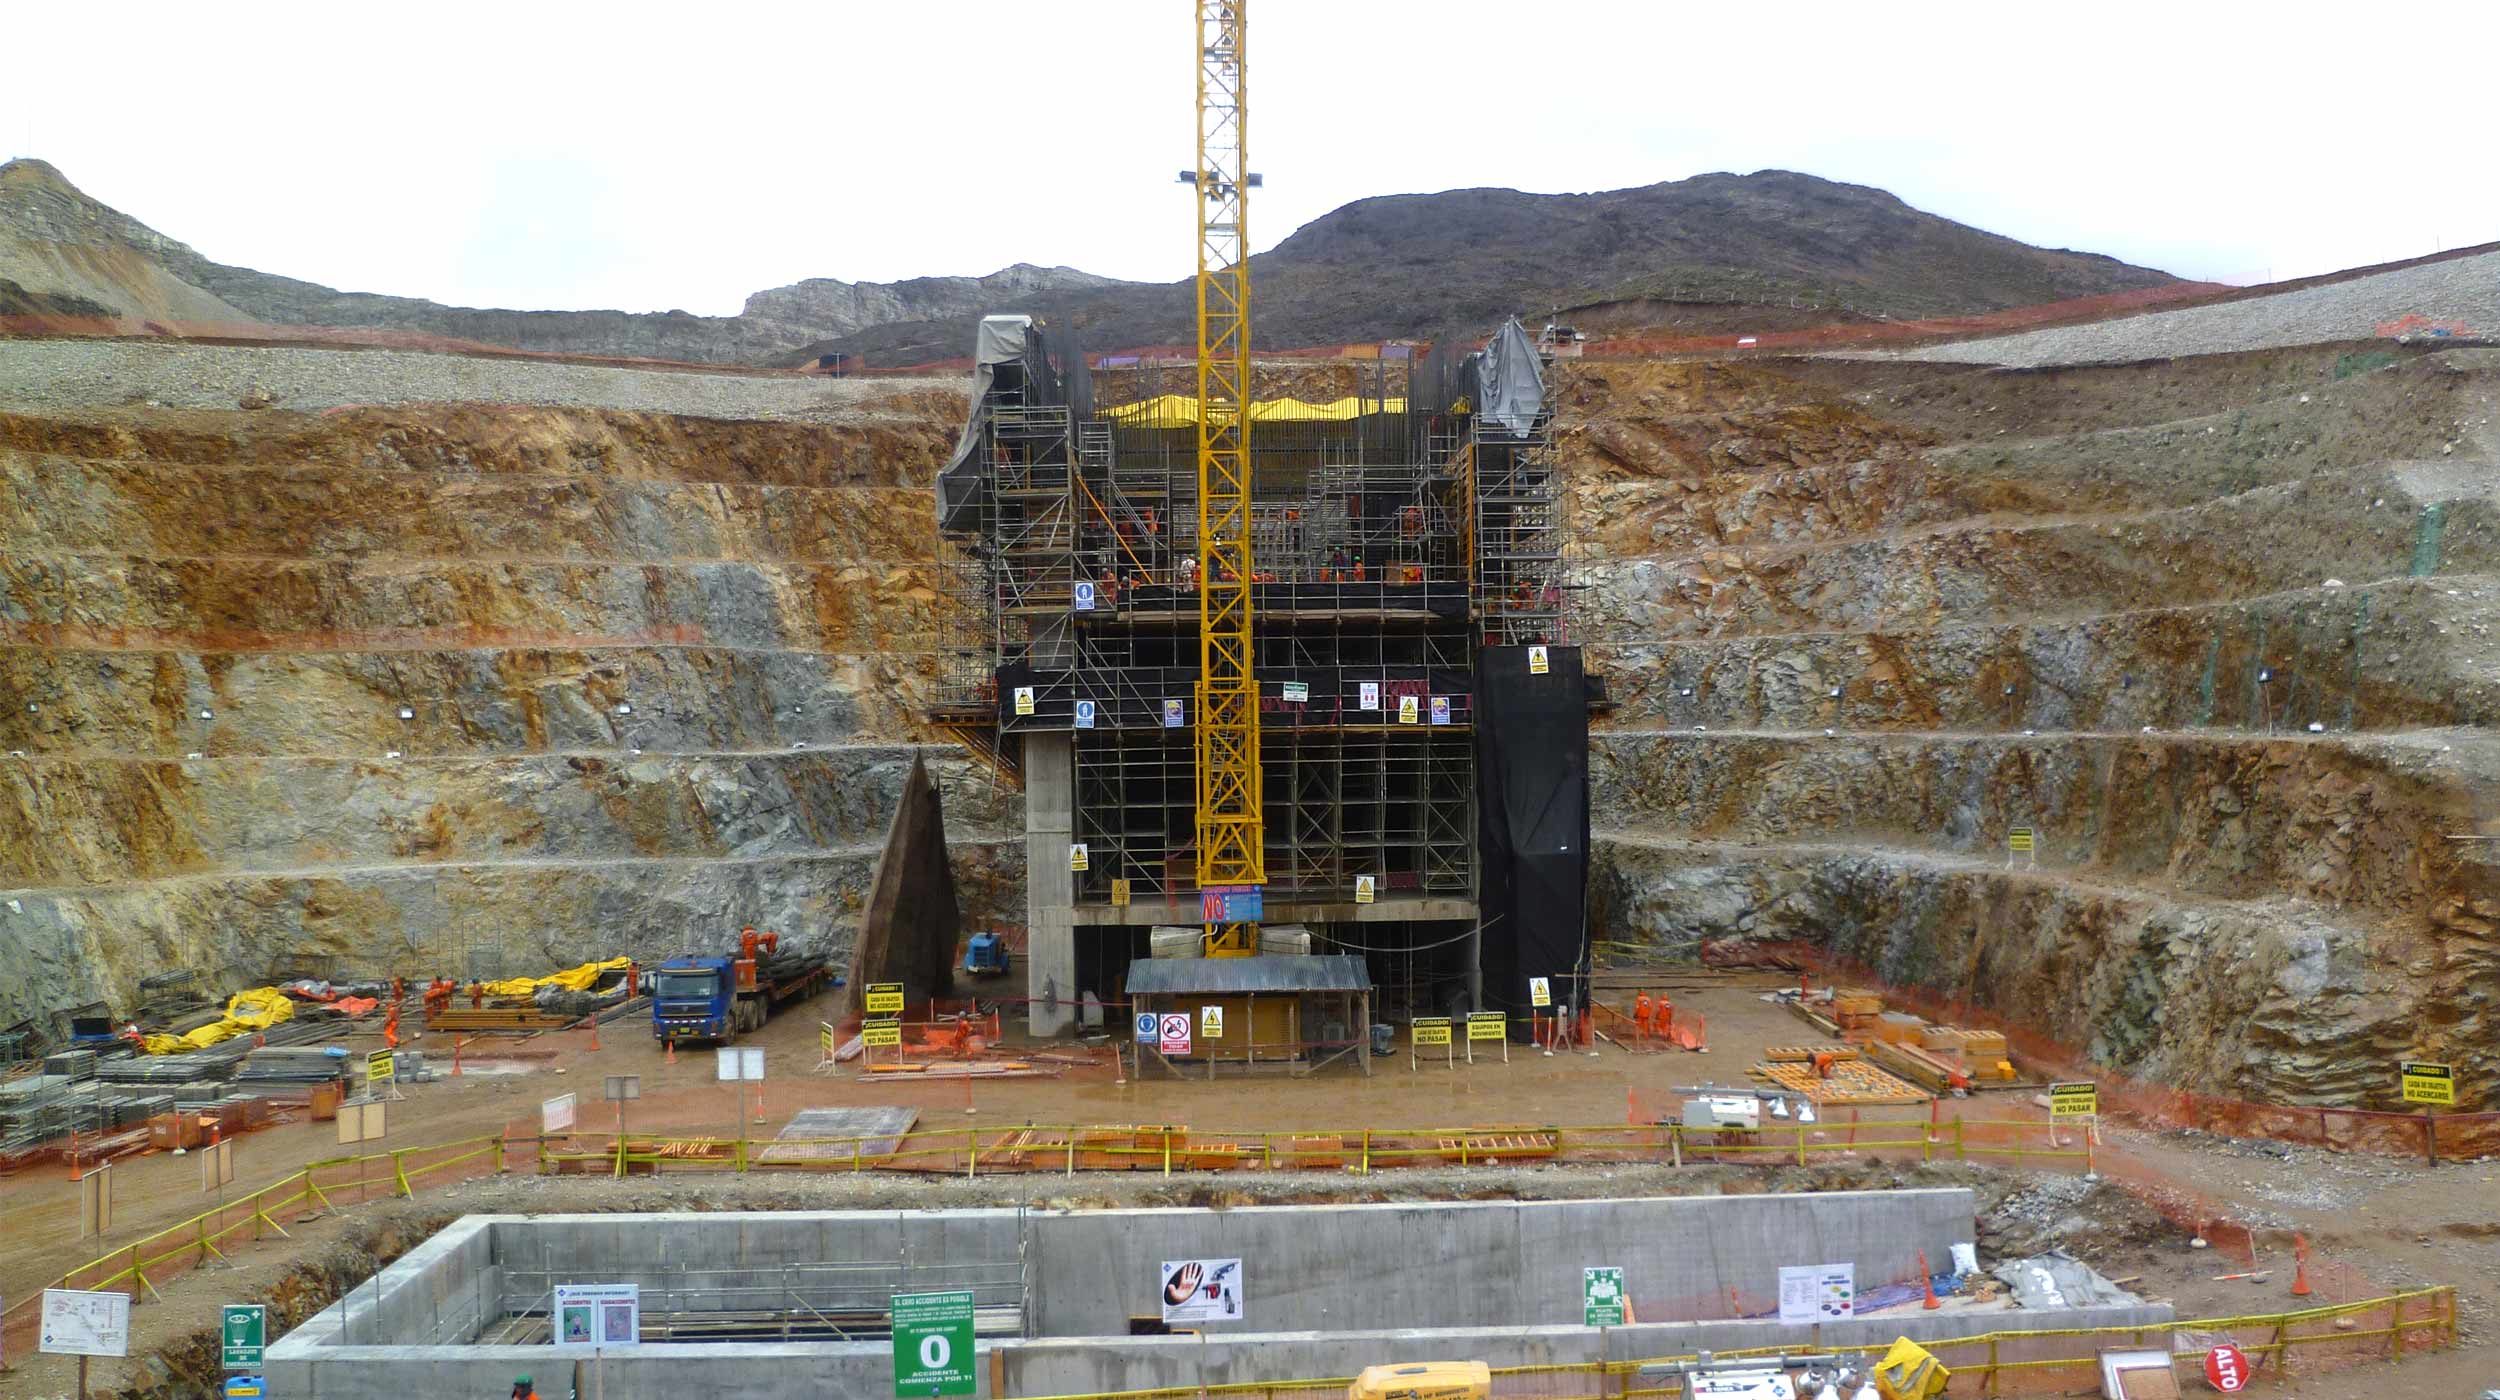 Des projets tels que cette mine à ciel ouvert, avec de nombreuses constructions diverses et variées, requièrent plusieurs solutions et des produits adaptés à chaque scénario.